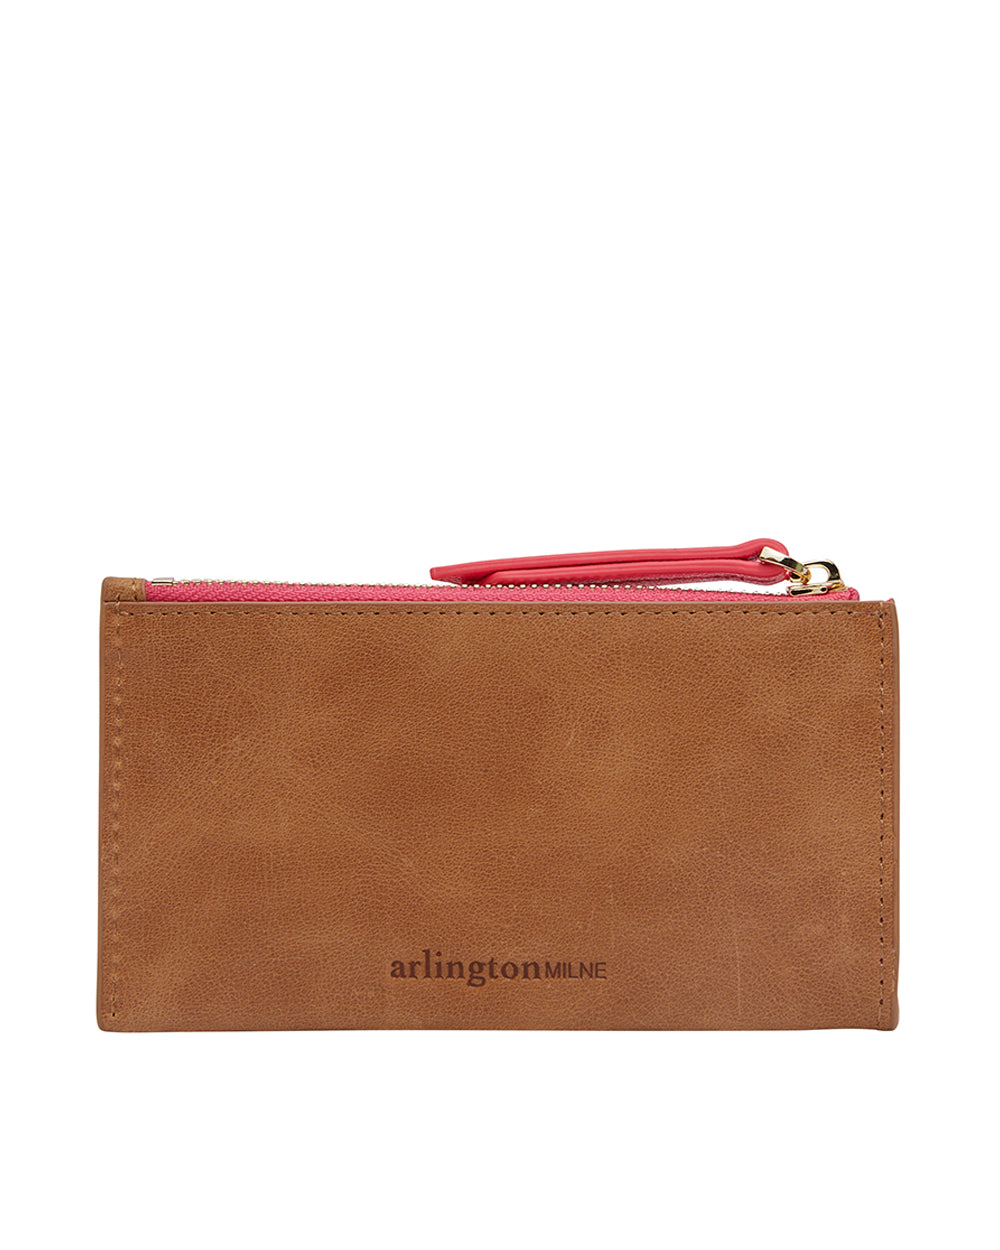 Arlington Milne | Compact Wallet | Vintage Tan